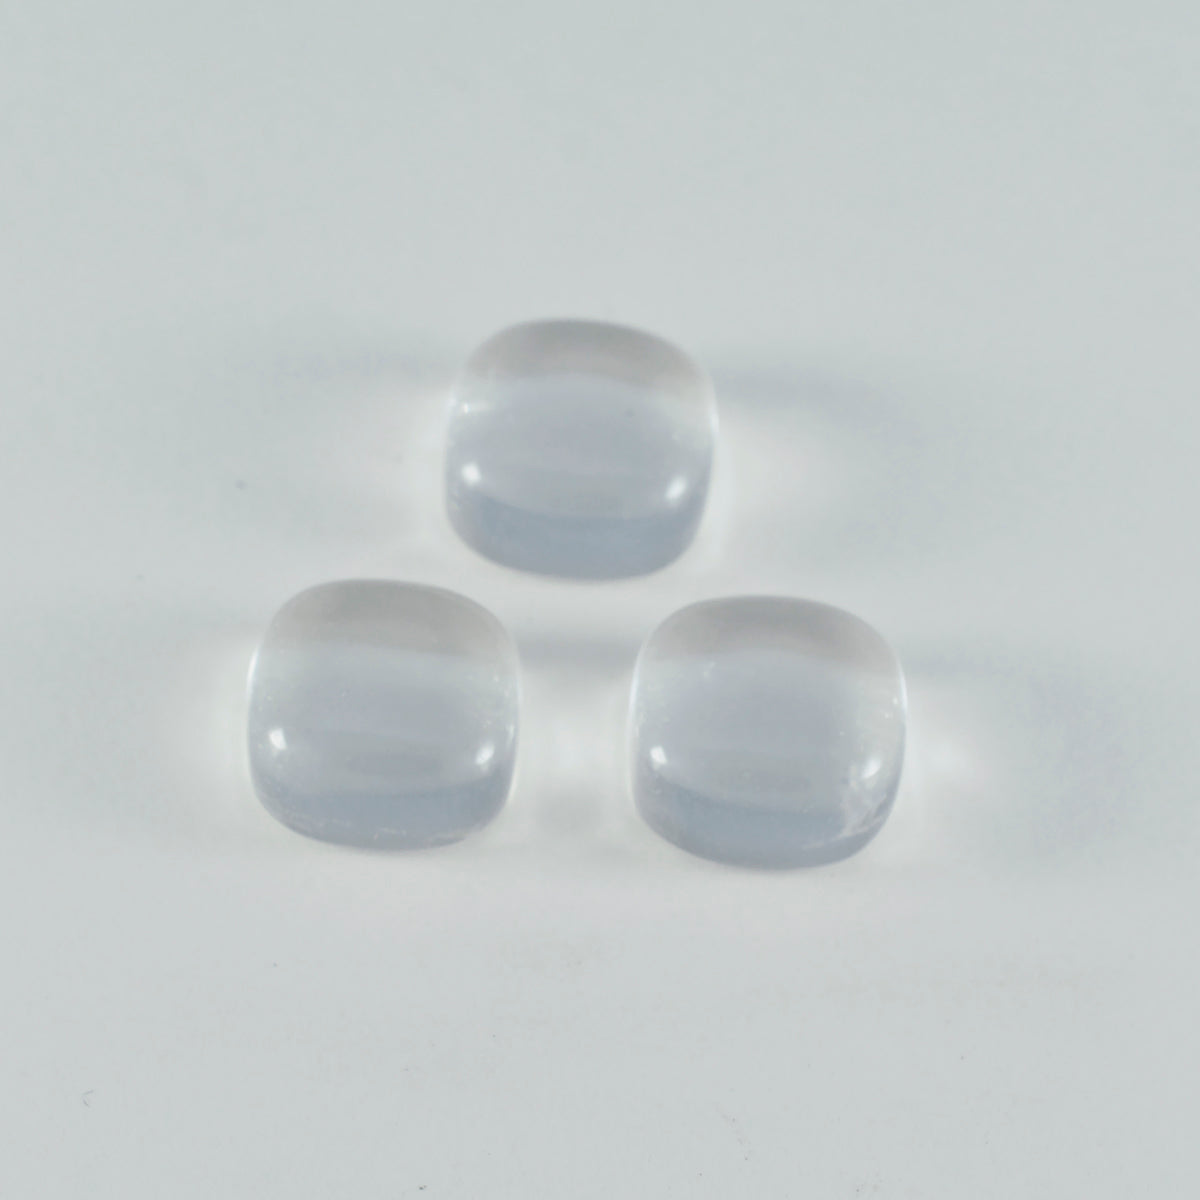 Riyogems – cabochon de quartz en cristal blanc, 8x8mm, en forme de coussin, belles pierres précieuses en vrac de qualité, 1 pièce